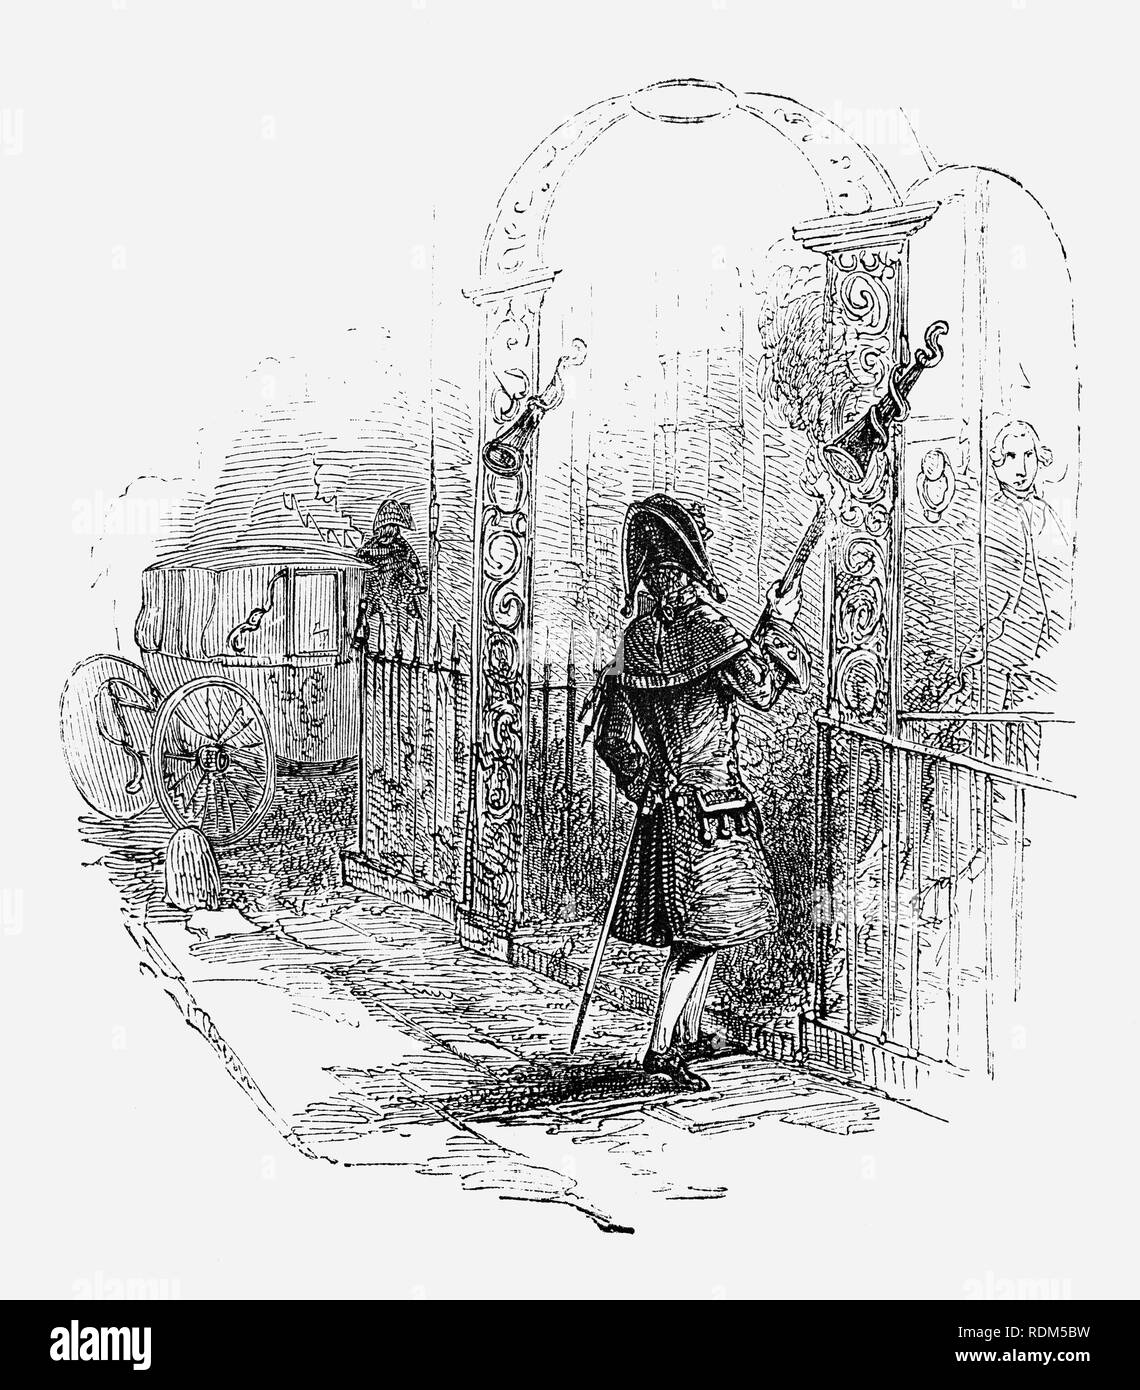 Un valet de pied du 18ème siècle, à propos d'éteindre son flambeau (TORCH) ou dans un extincteur sur le côté d'un titre de porte, ville de Londres, Angleterre Banque D'Images